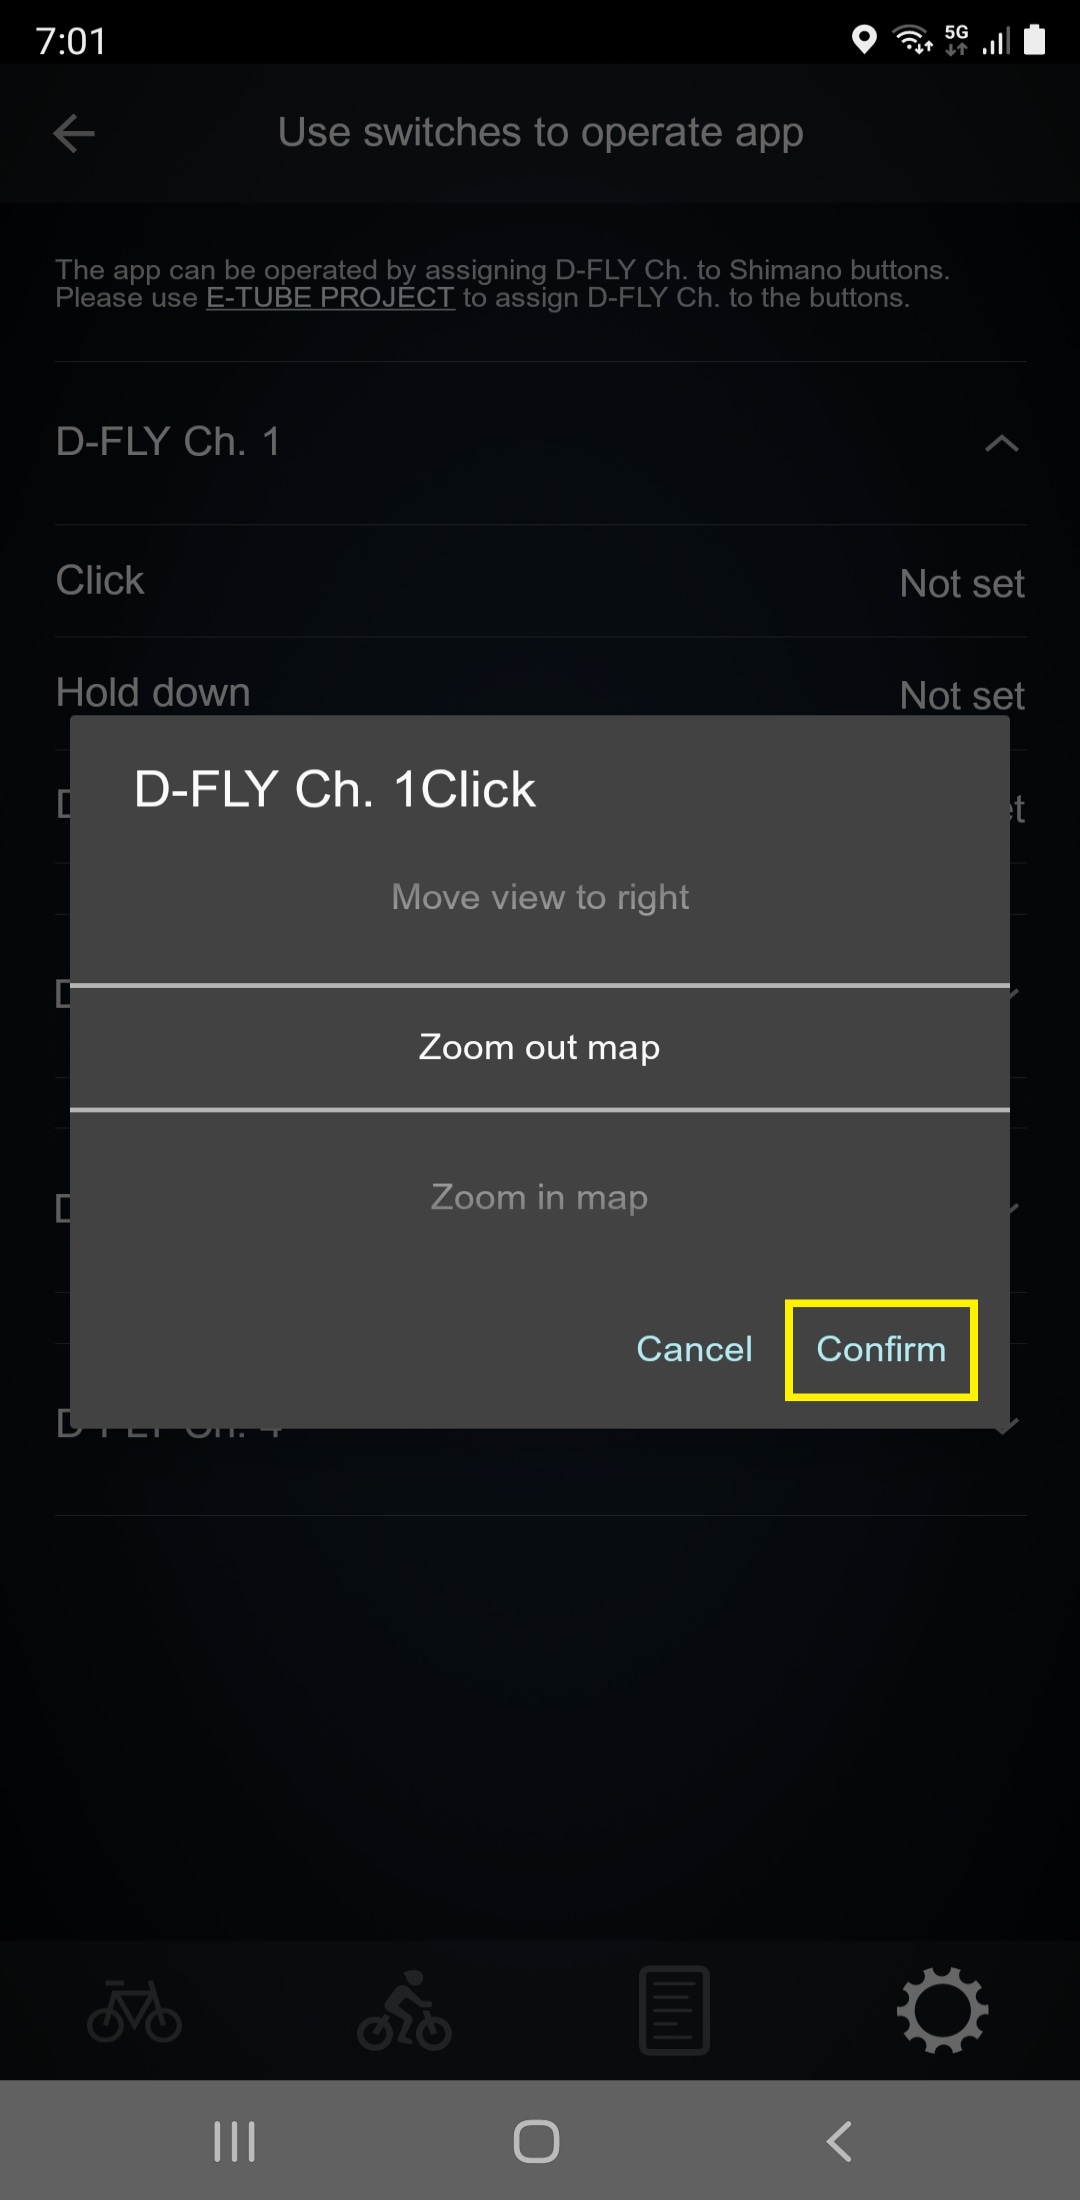 Seleccione una operación de la app y pulse Confirmar para completar la configuración. Intente acercar o alejar la pantalla del mapa con el interruptor.